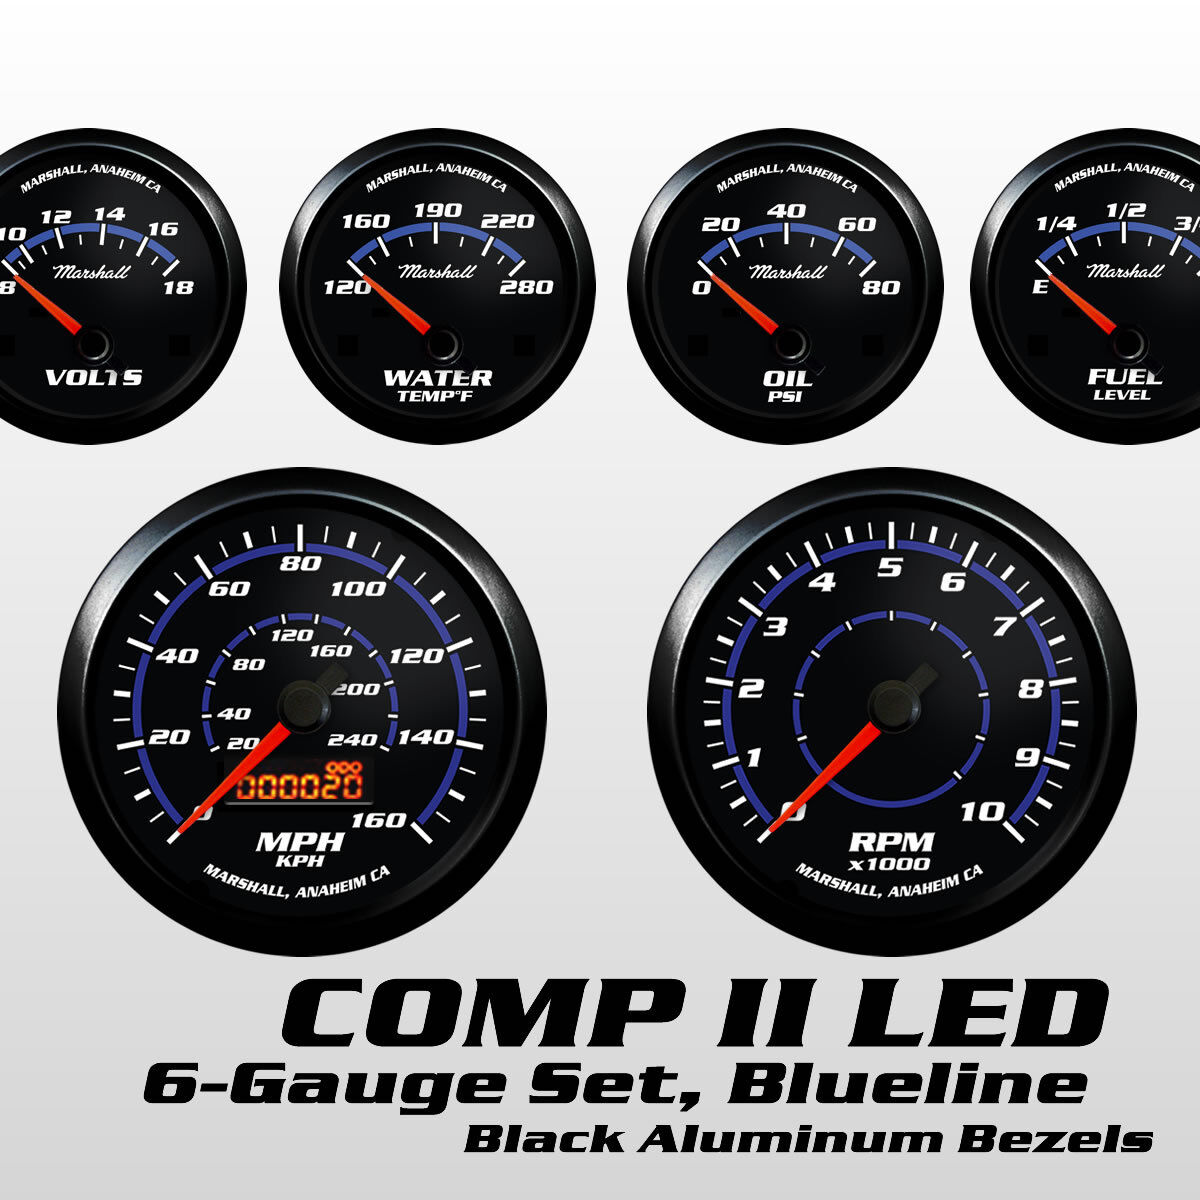 C2 Blueline 6 Gauge Set, Black Bezels, 0-90 Ohm Fuel Level, Cobalt Blue Accents